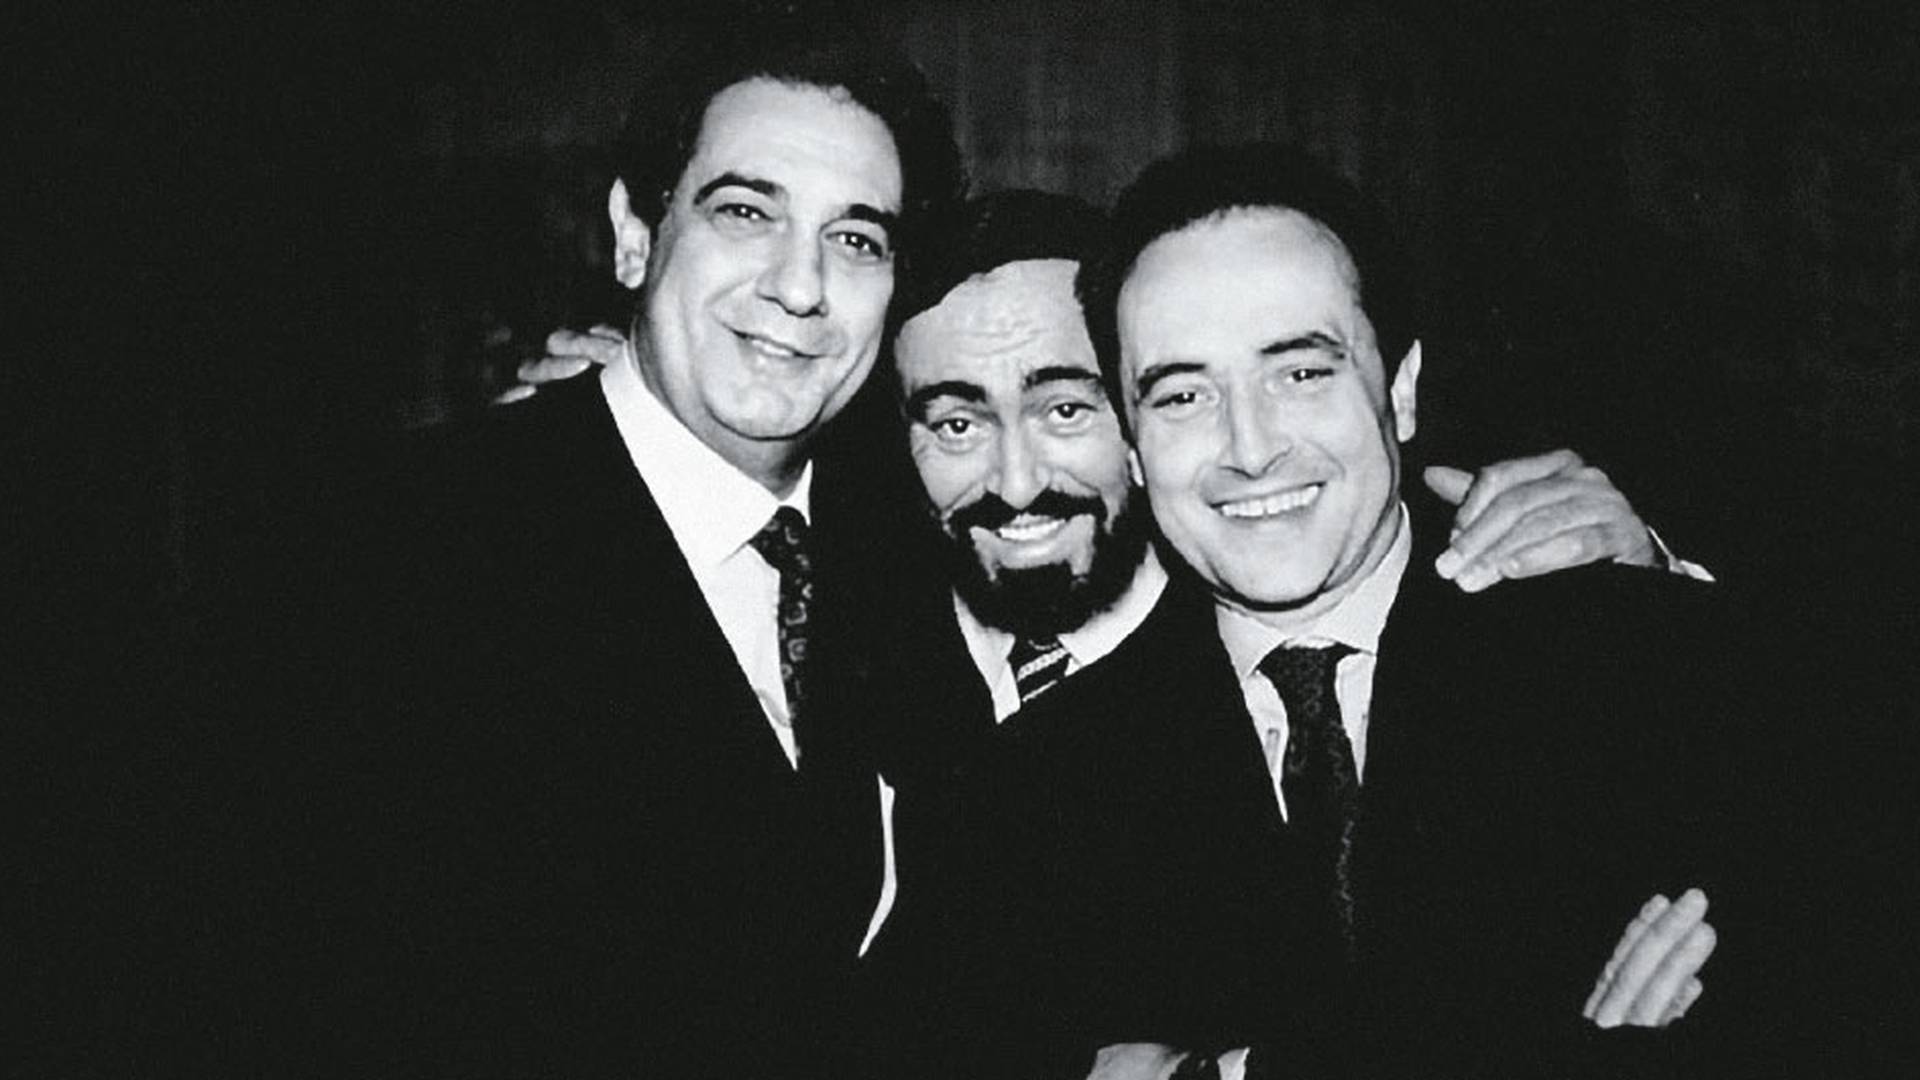 Con Luciano Pavarotti y José Carreras, ‘Los tres tenores’, hizo mucho dinero. Con el primero competía fuertemente por figurar en medios y en círculos de fama.